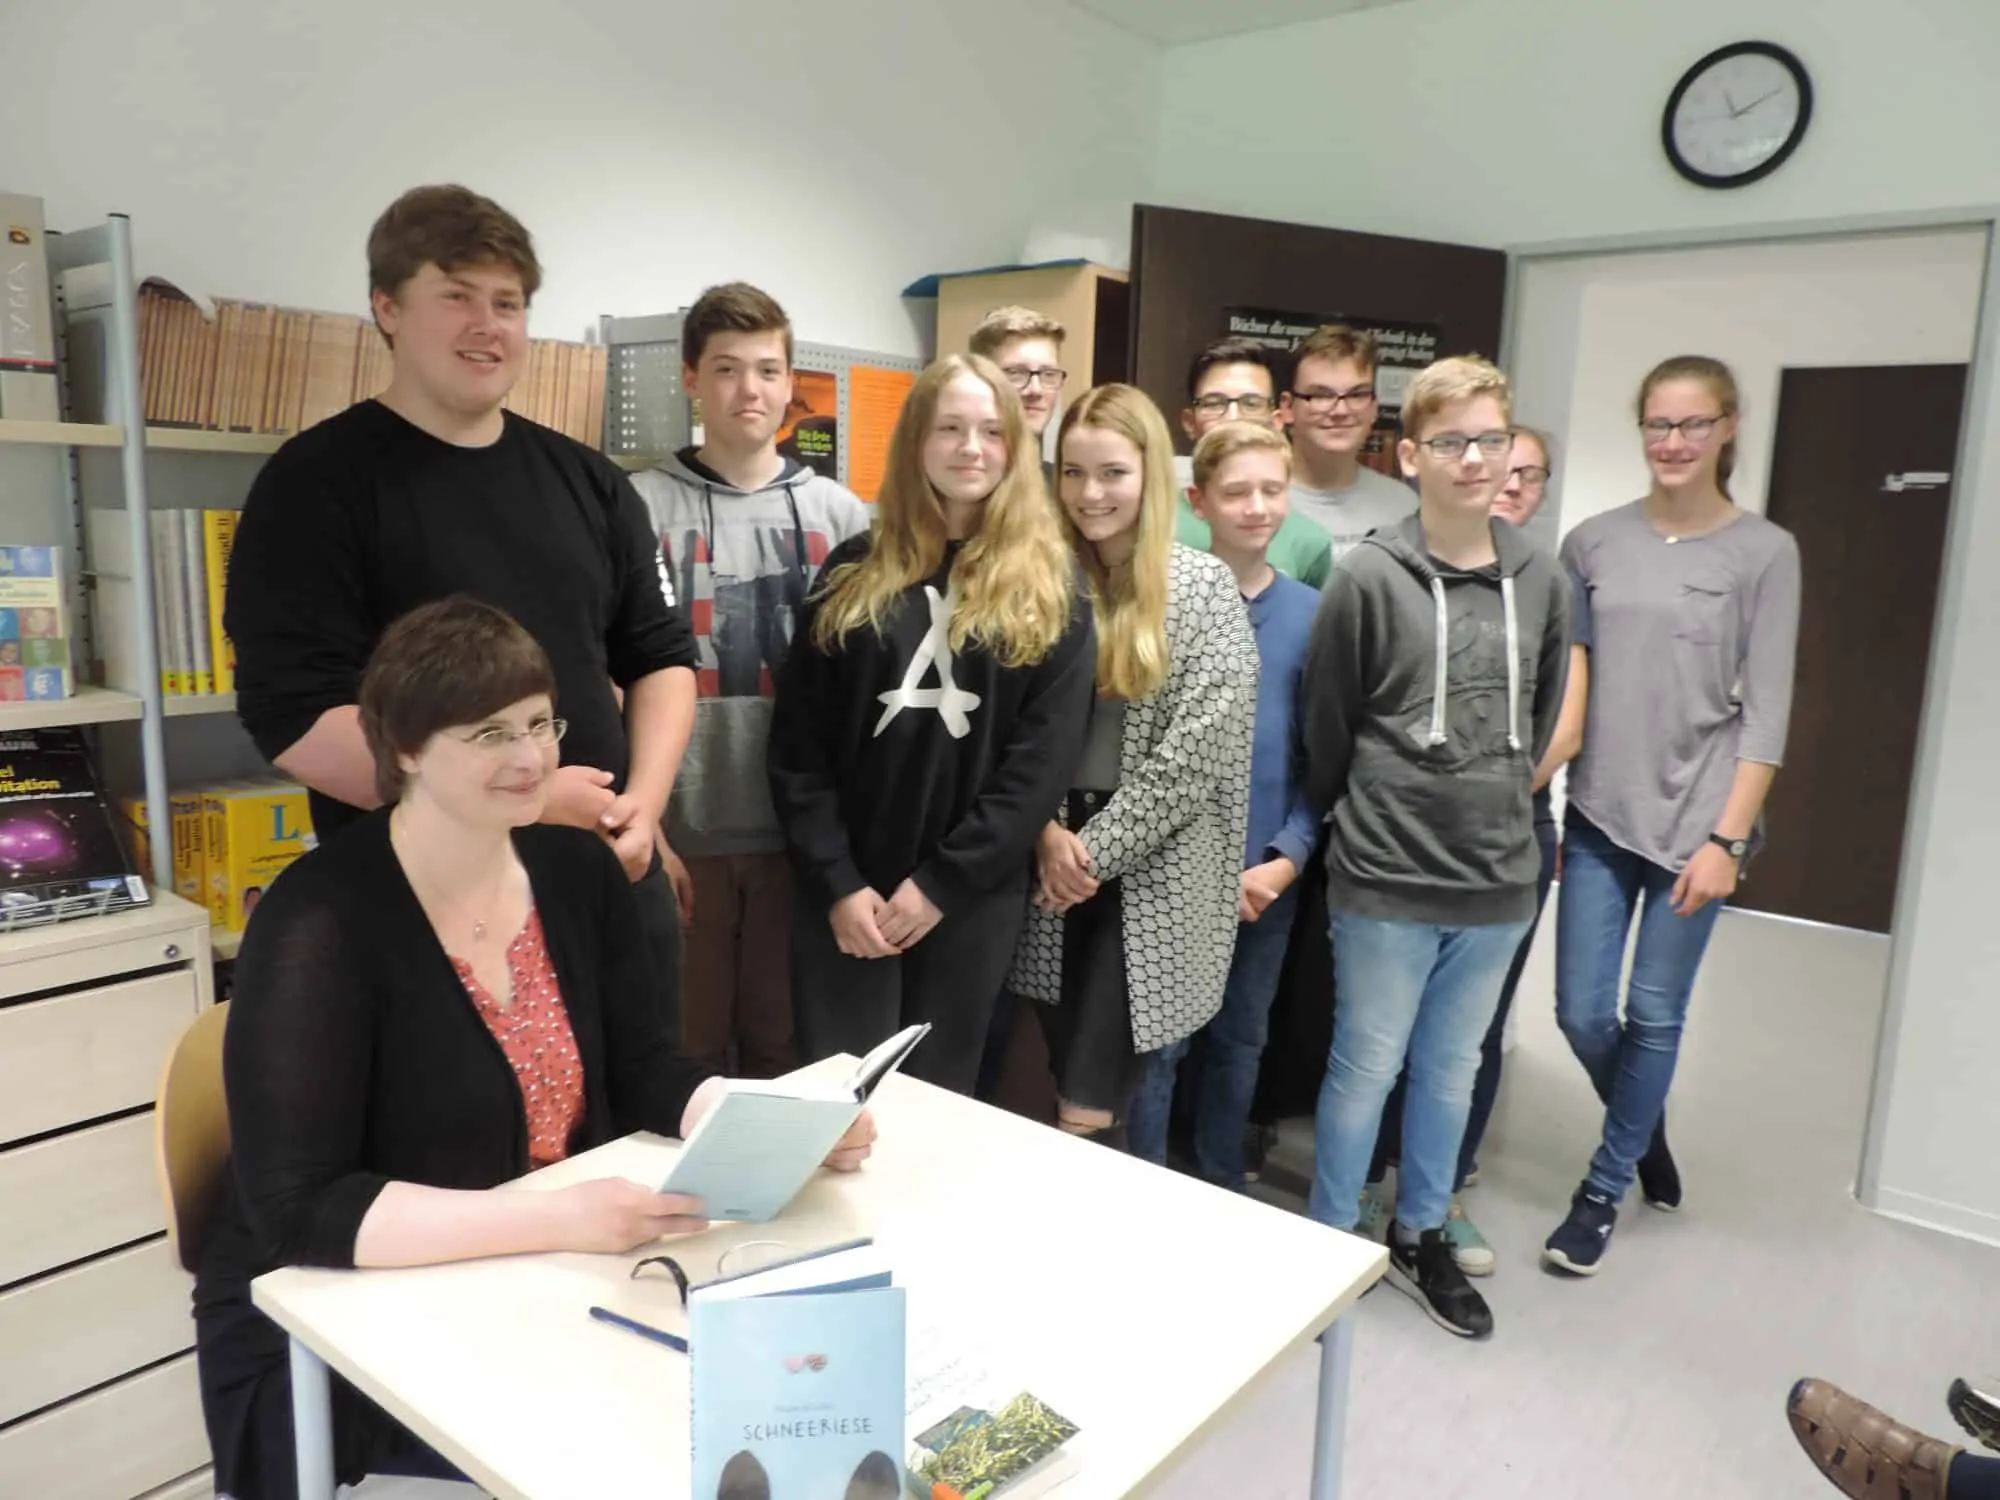 Die Bielefelder Autorin Susann Kreller zu Gast in der Gesamtschule Lippstadt. Foto: Sabine Hense-Ferch